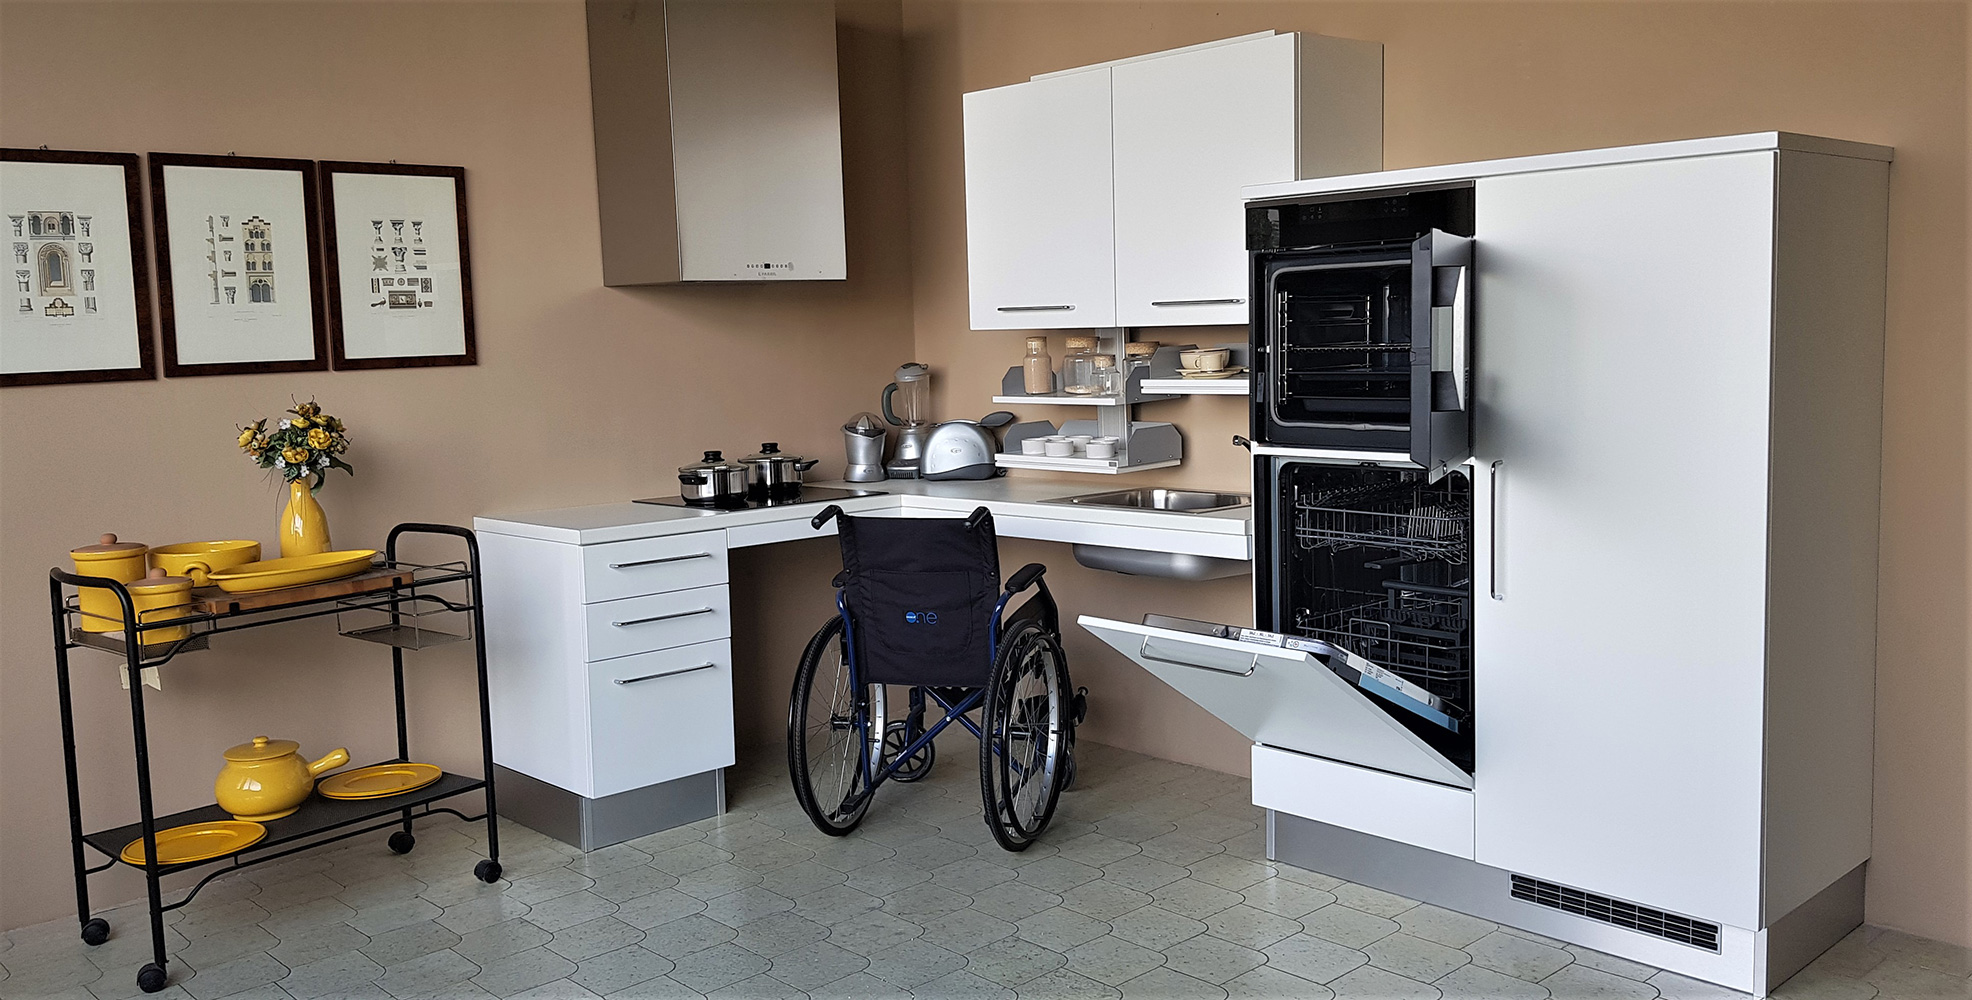 Cucina domotica per disabili - Guarda modelli e prezzi